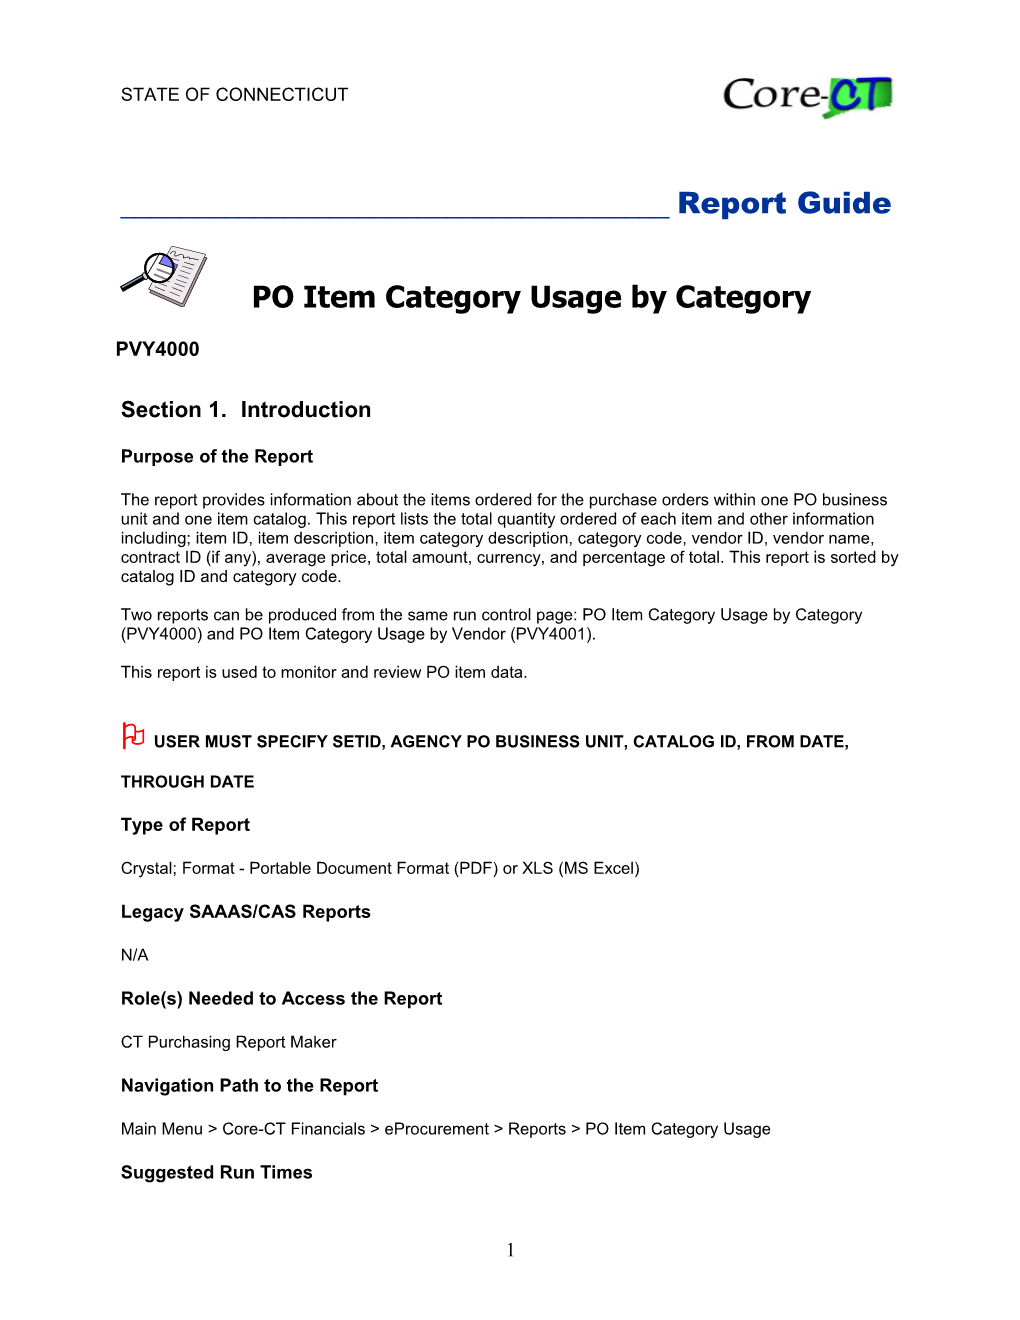 PO Item Category Usage by Category (PVY4000)